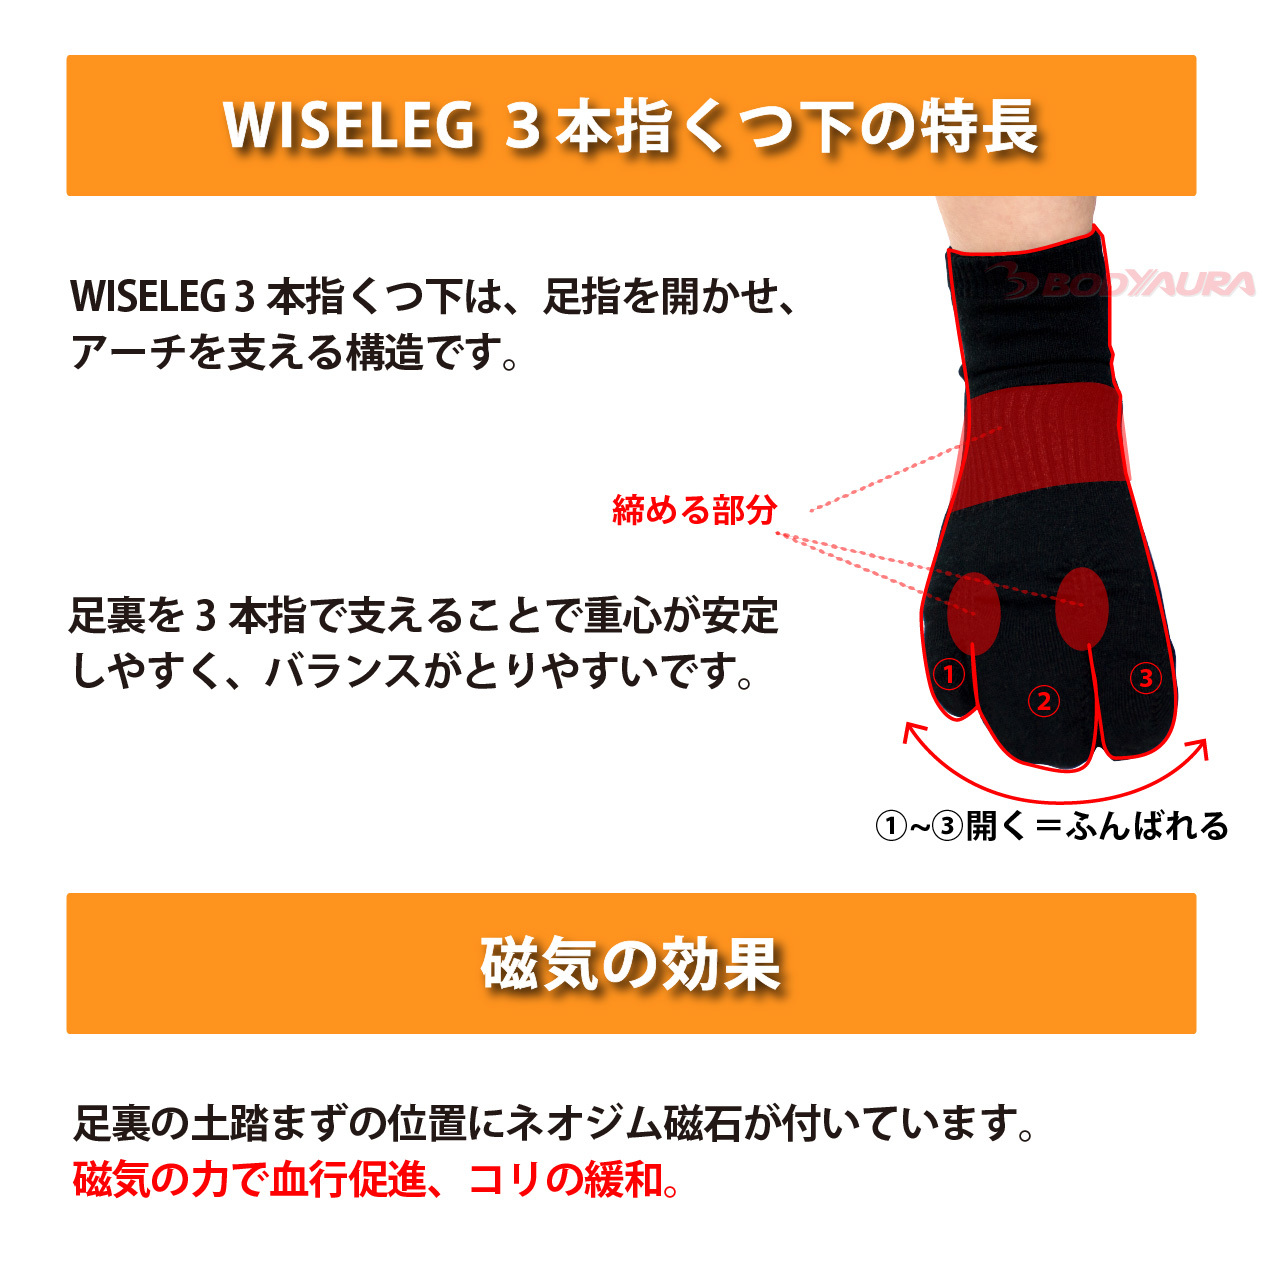 マグネットフットケアWISELEG3本指靴下の特長、磁気の効果